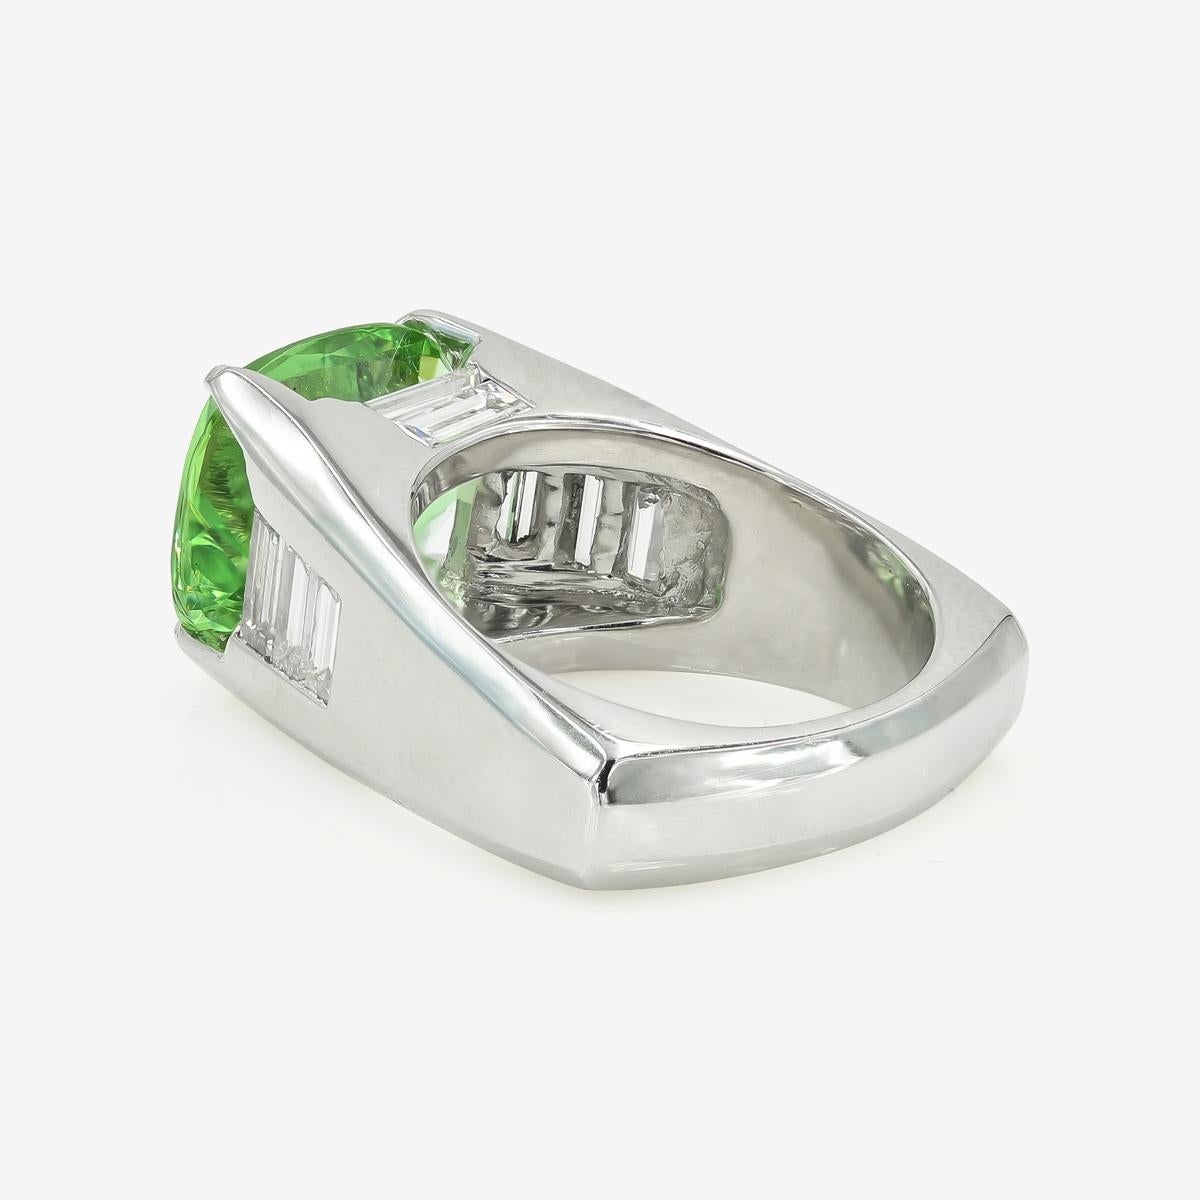 Women's or Men's 5.22 Carat Natural Green Beryl and Baguette Diamond Ring in Platinum